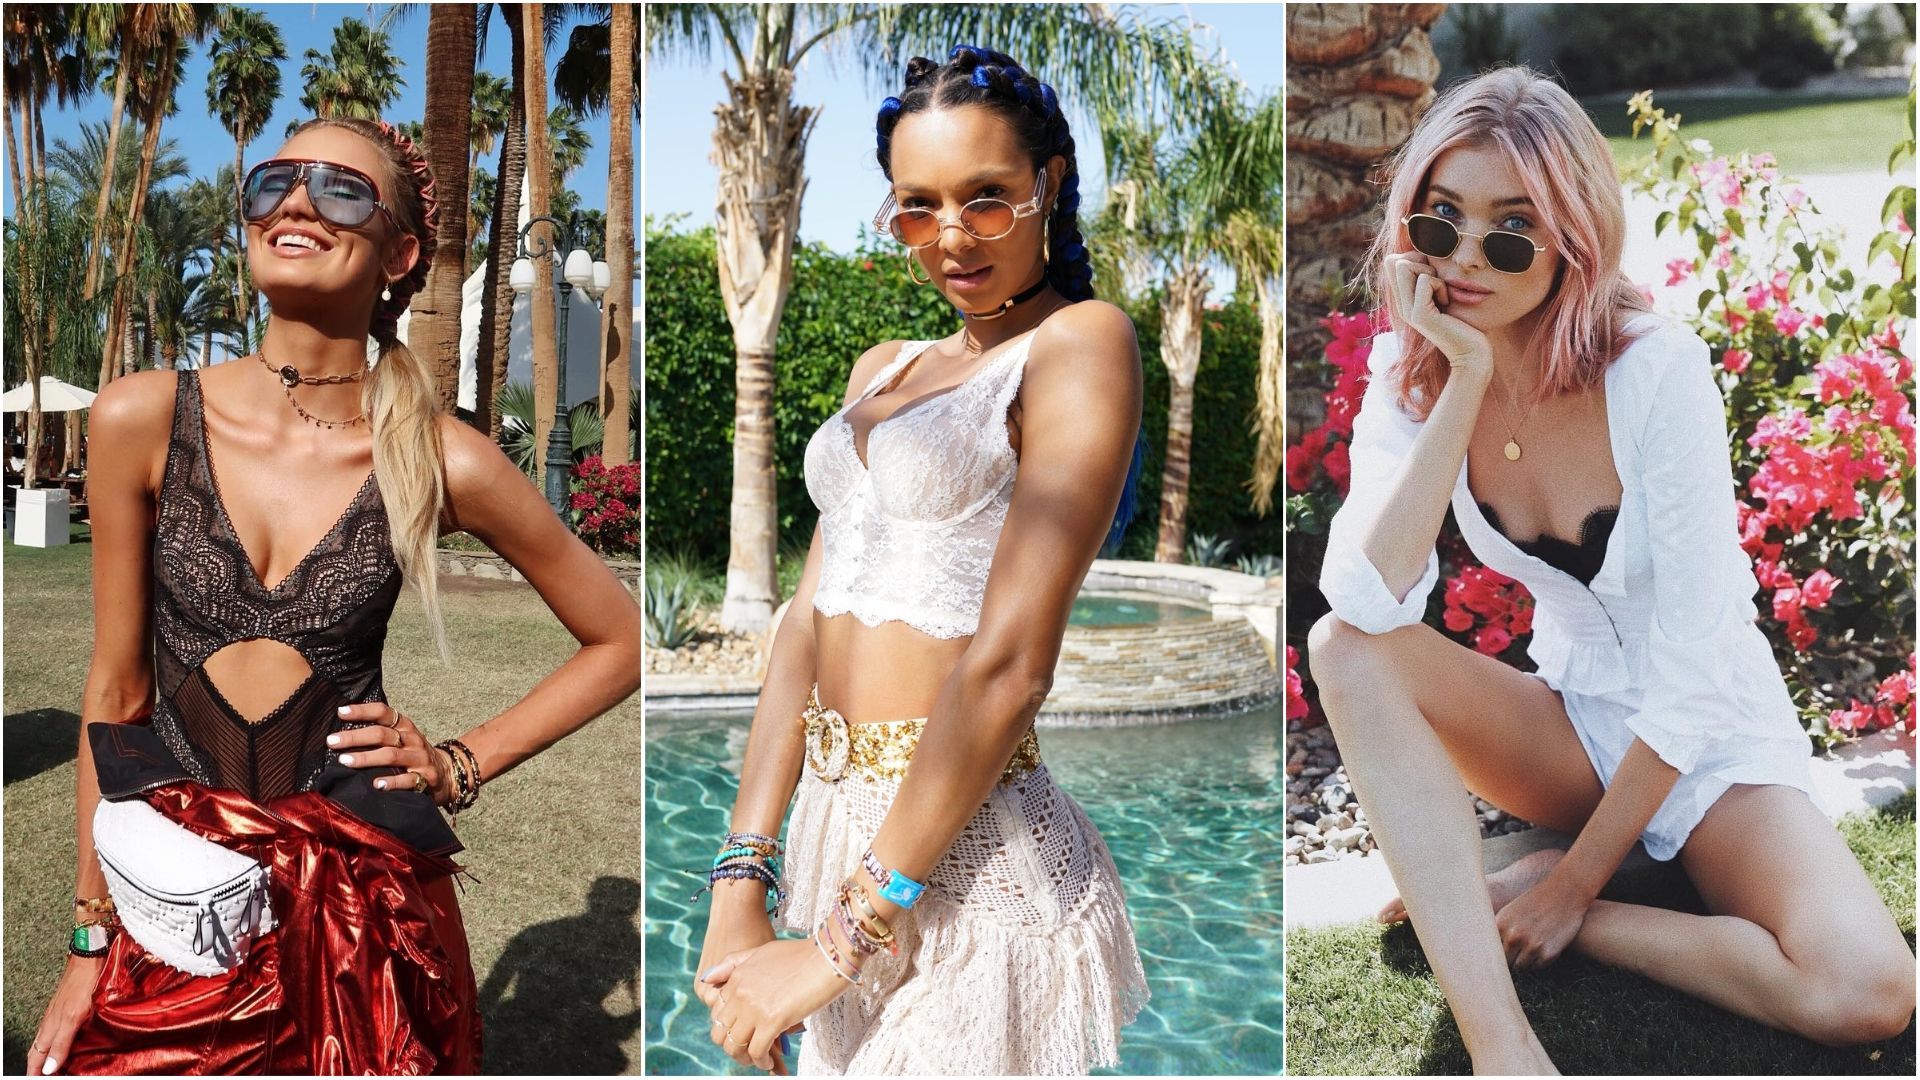 Моделі Victoria’s Secret на знаменитому фестивалі Coachella 2018: фото найкращих образів